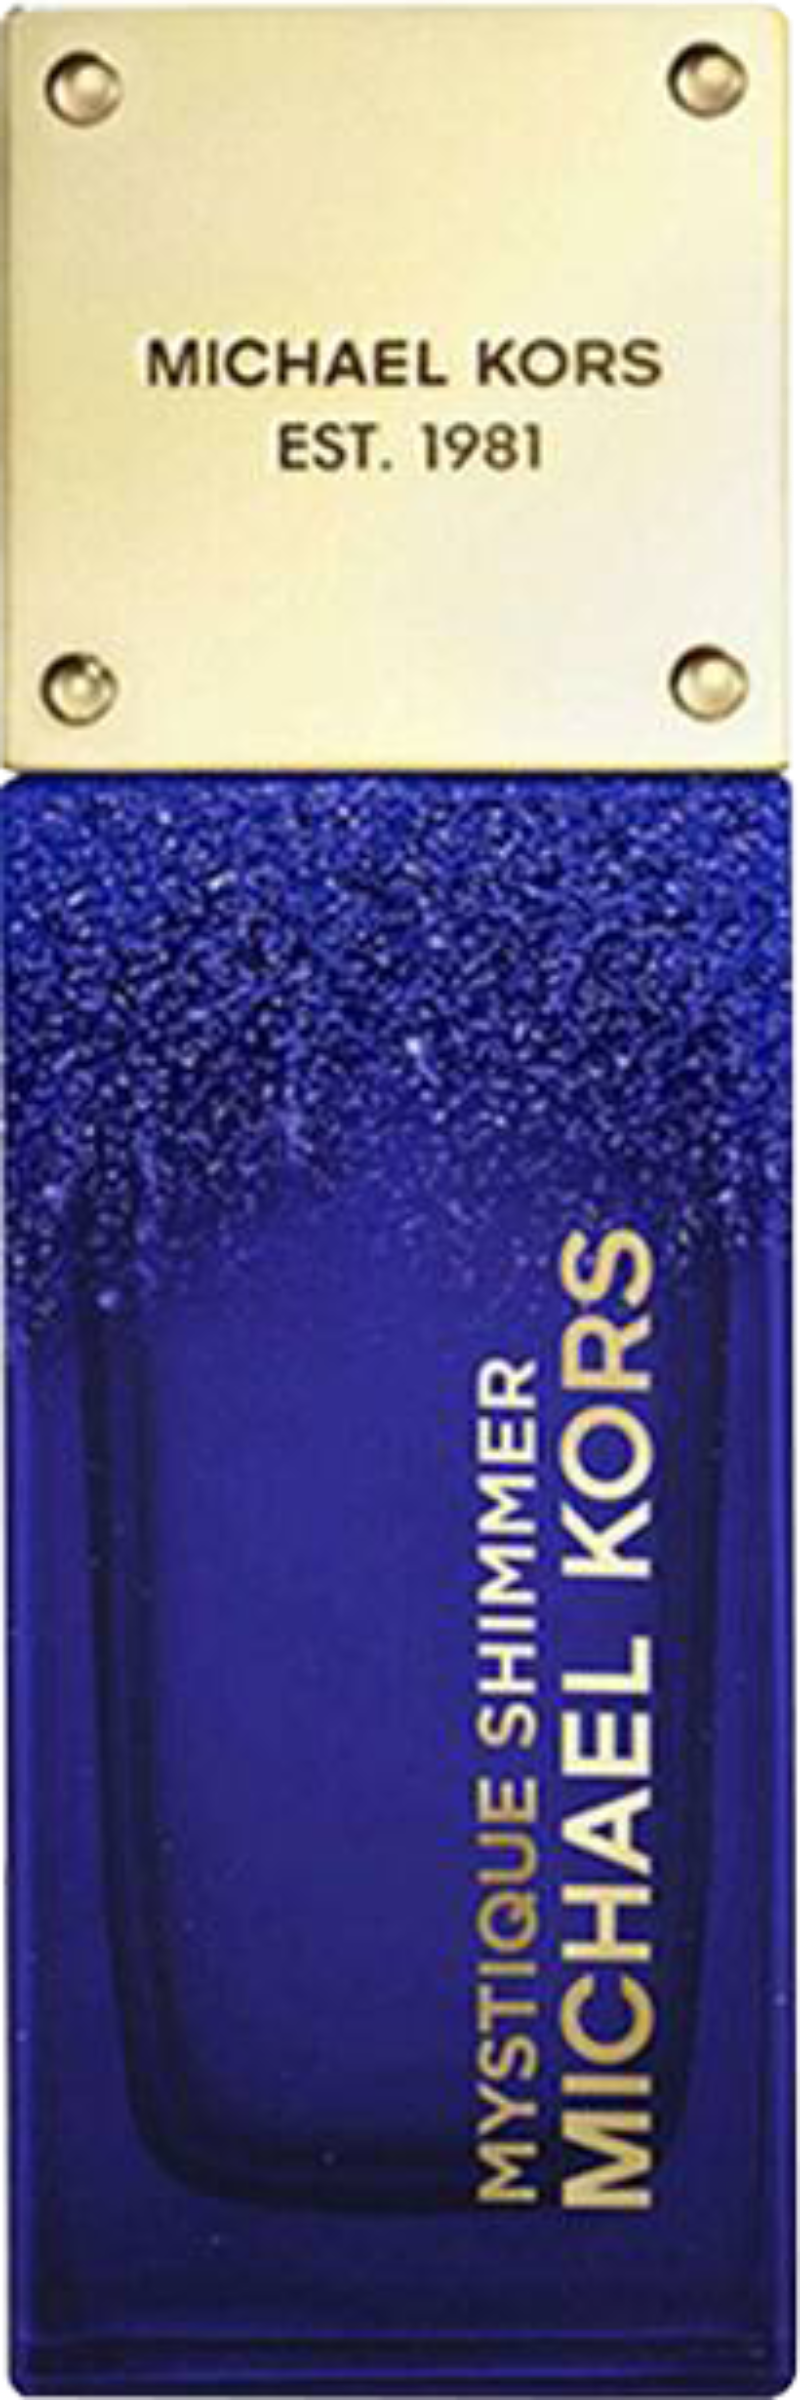 Michael Kors - Mystique Shimmer EdP 50 ml